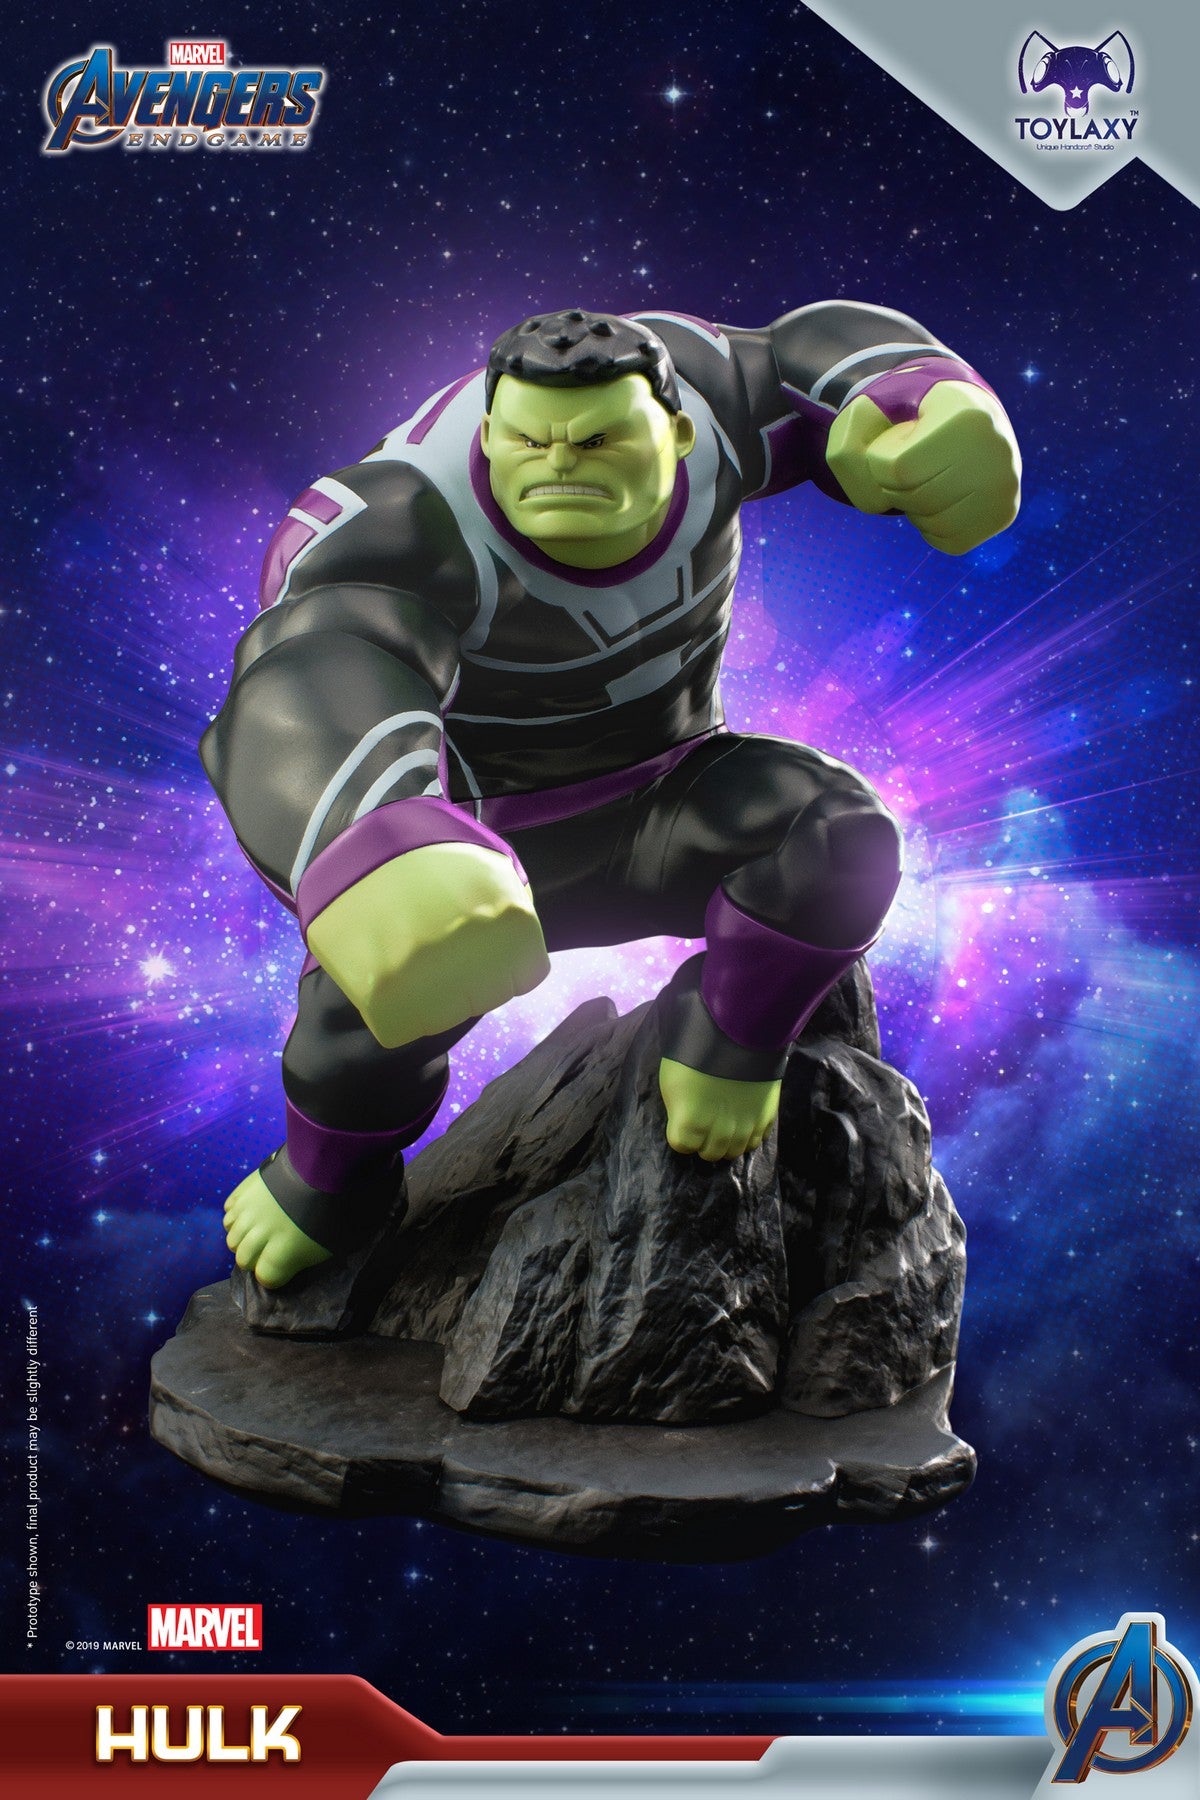 漫威復仇者聯盟：綠巨人 浩克正版模型手辦人偶玩具 Marvel's Avengers: Endgame Premium PVC Hulk figure toy 